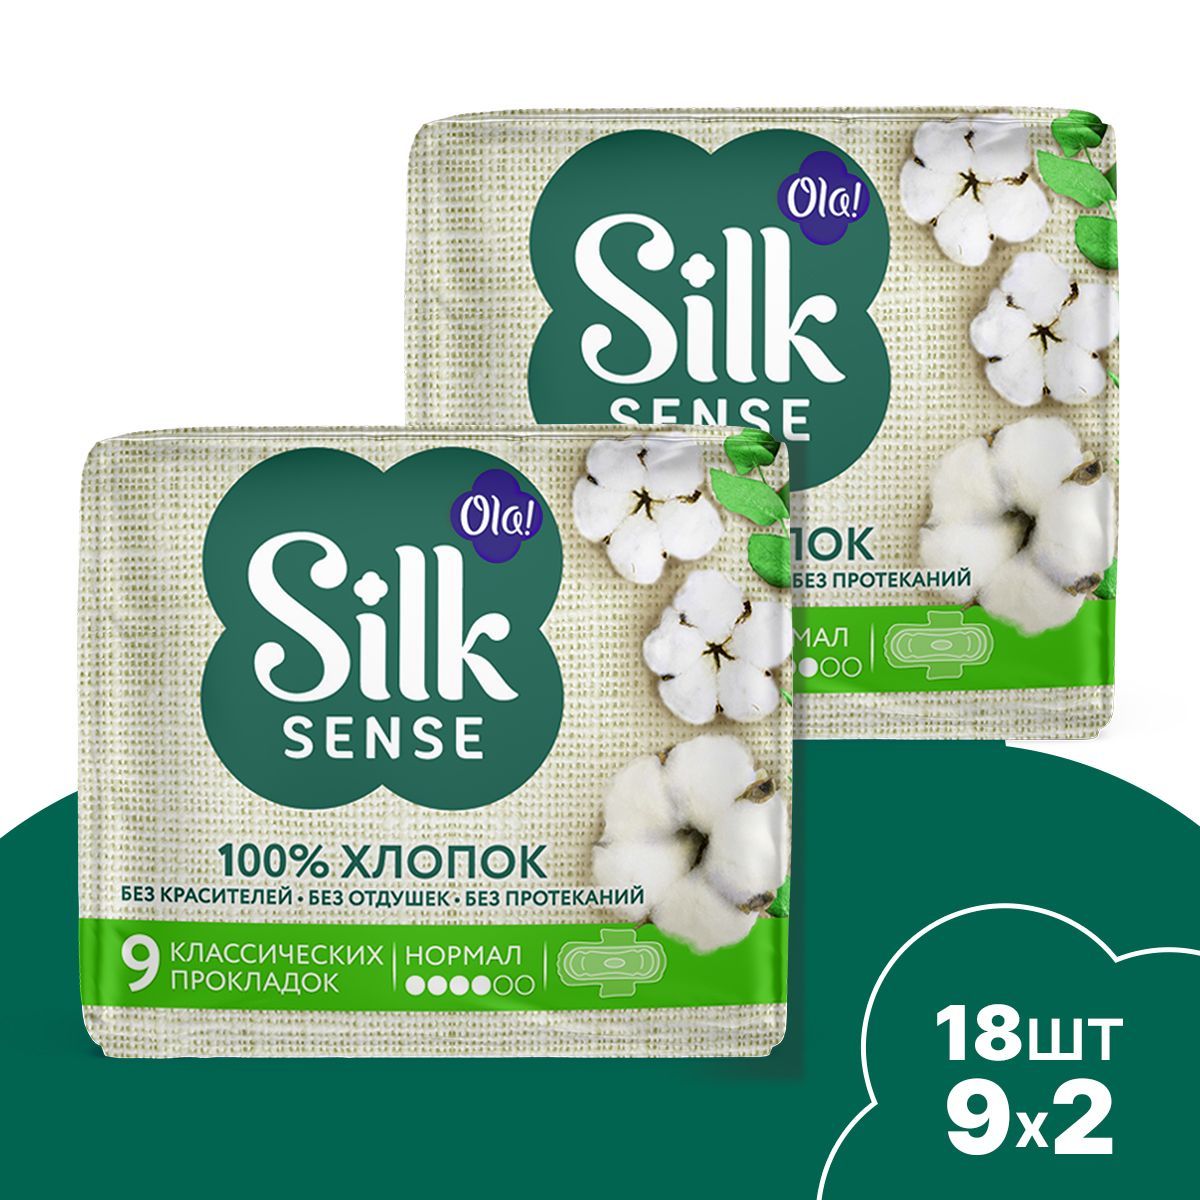 Натуральные прокладки Ola! Silk Sense Нормал с хлопковой поверхностью 18 шт 2 уп по 9 шт - фото 1